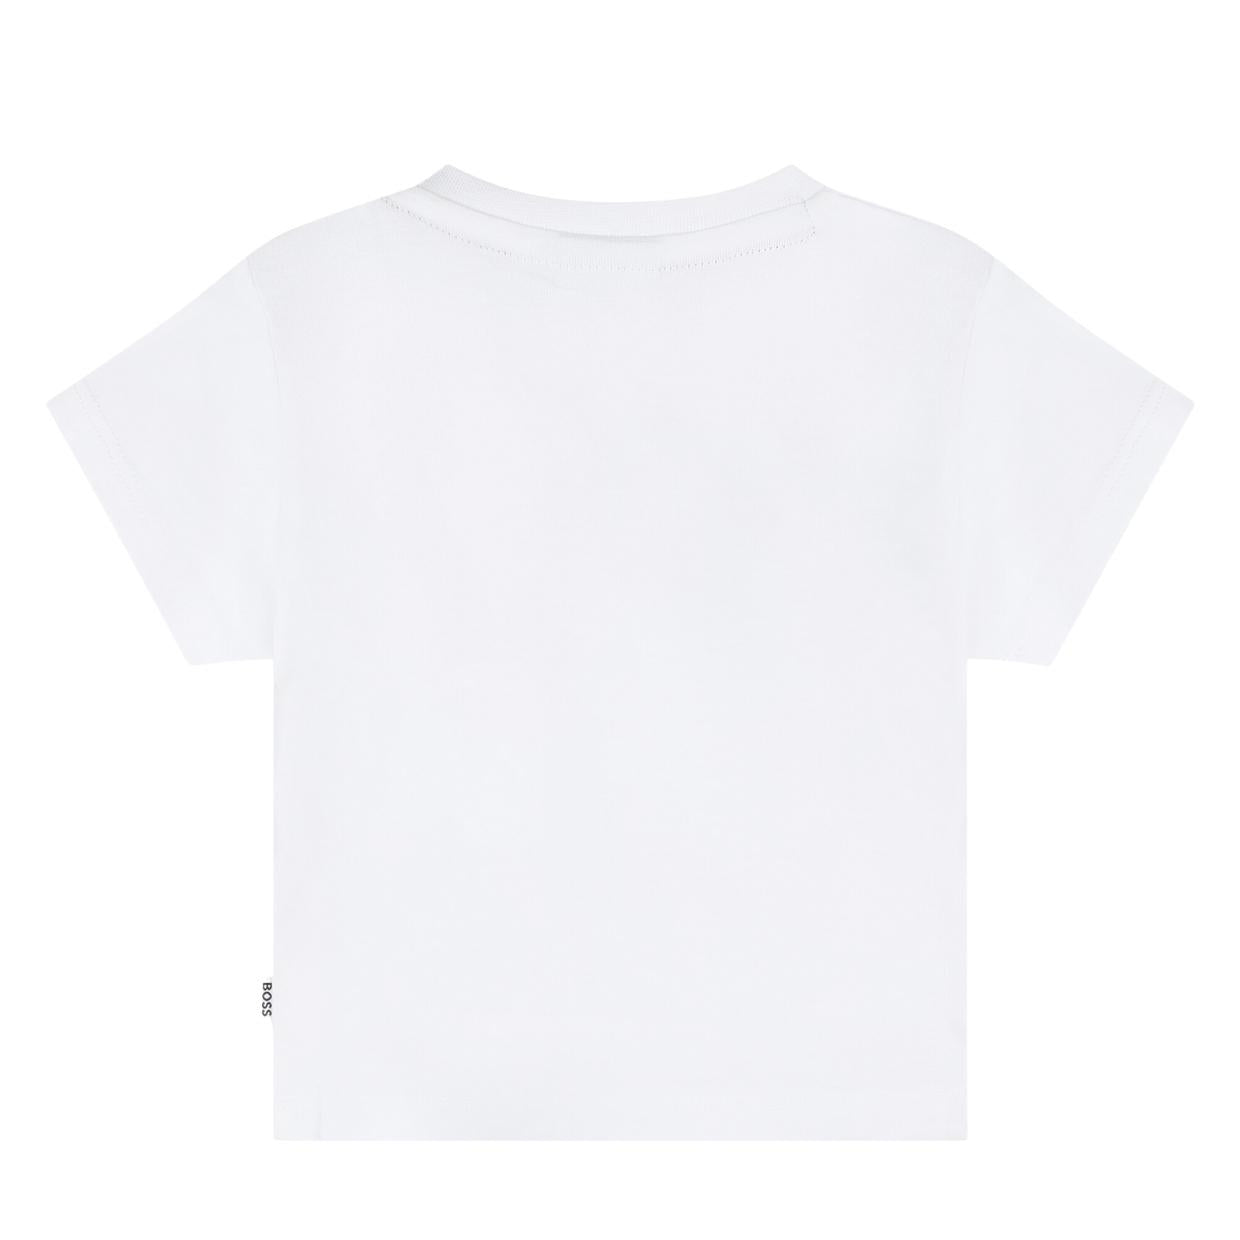 BOSS Baby Printed Logo White T-Shirt